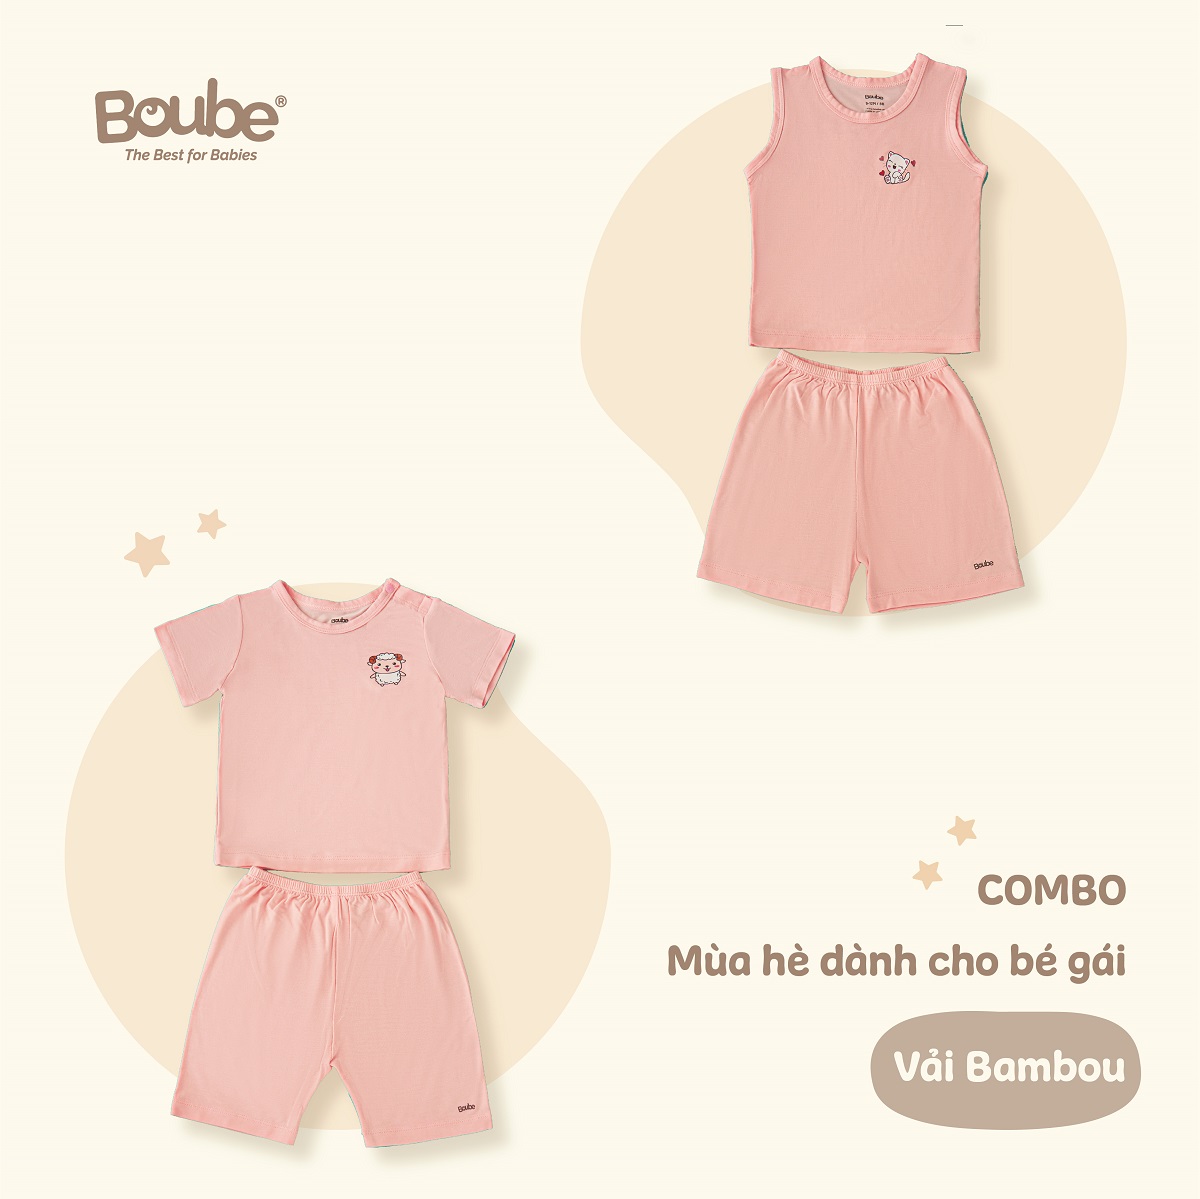 Combo 2 bộ quần áo mùa hè mát mẻ cho bé gái Boube, chất vải Bamboo thông minh, thoải mái - Size cho bé 3-24M (6-15kg)